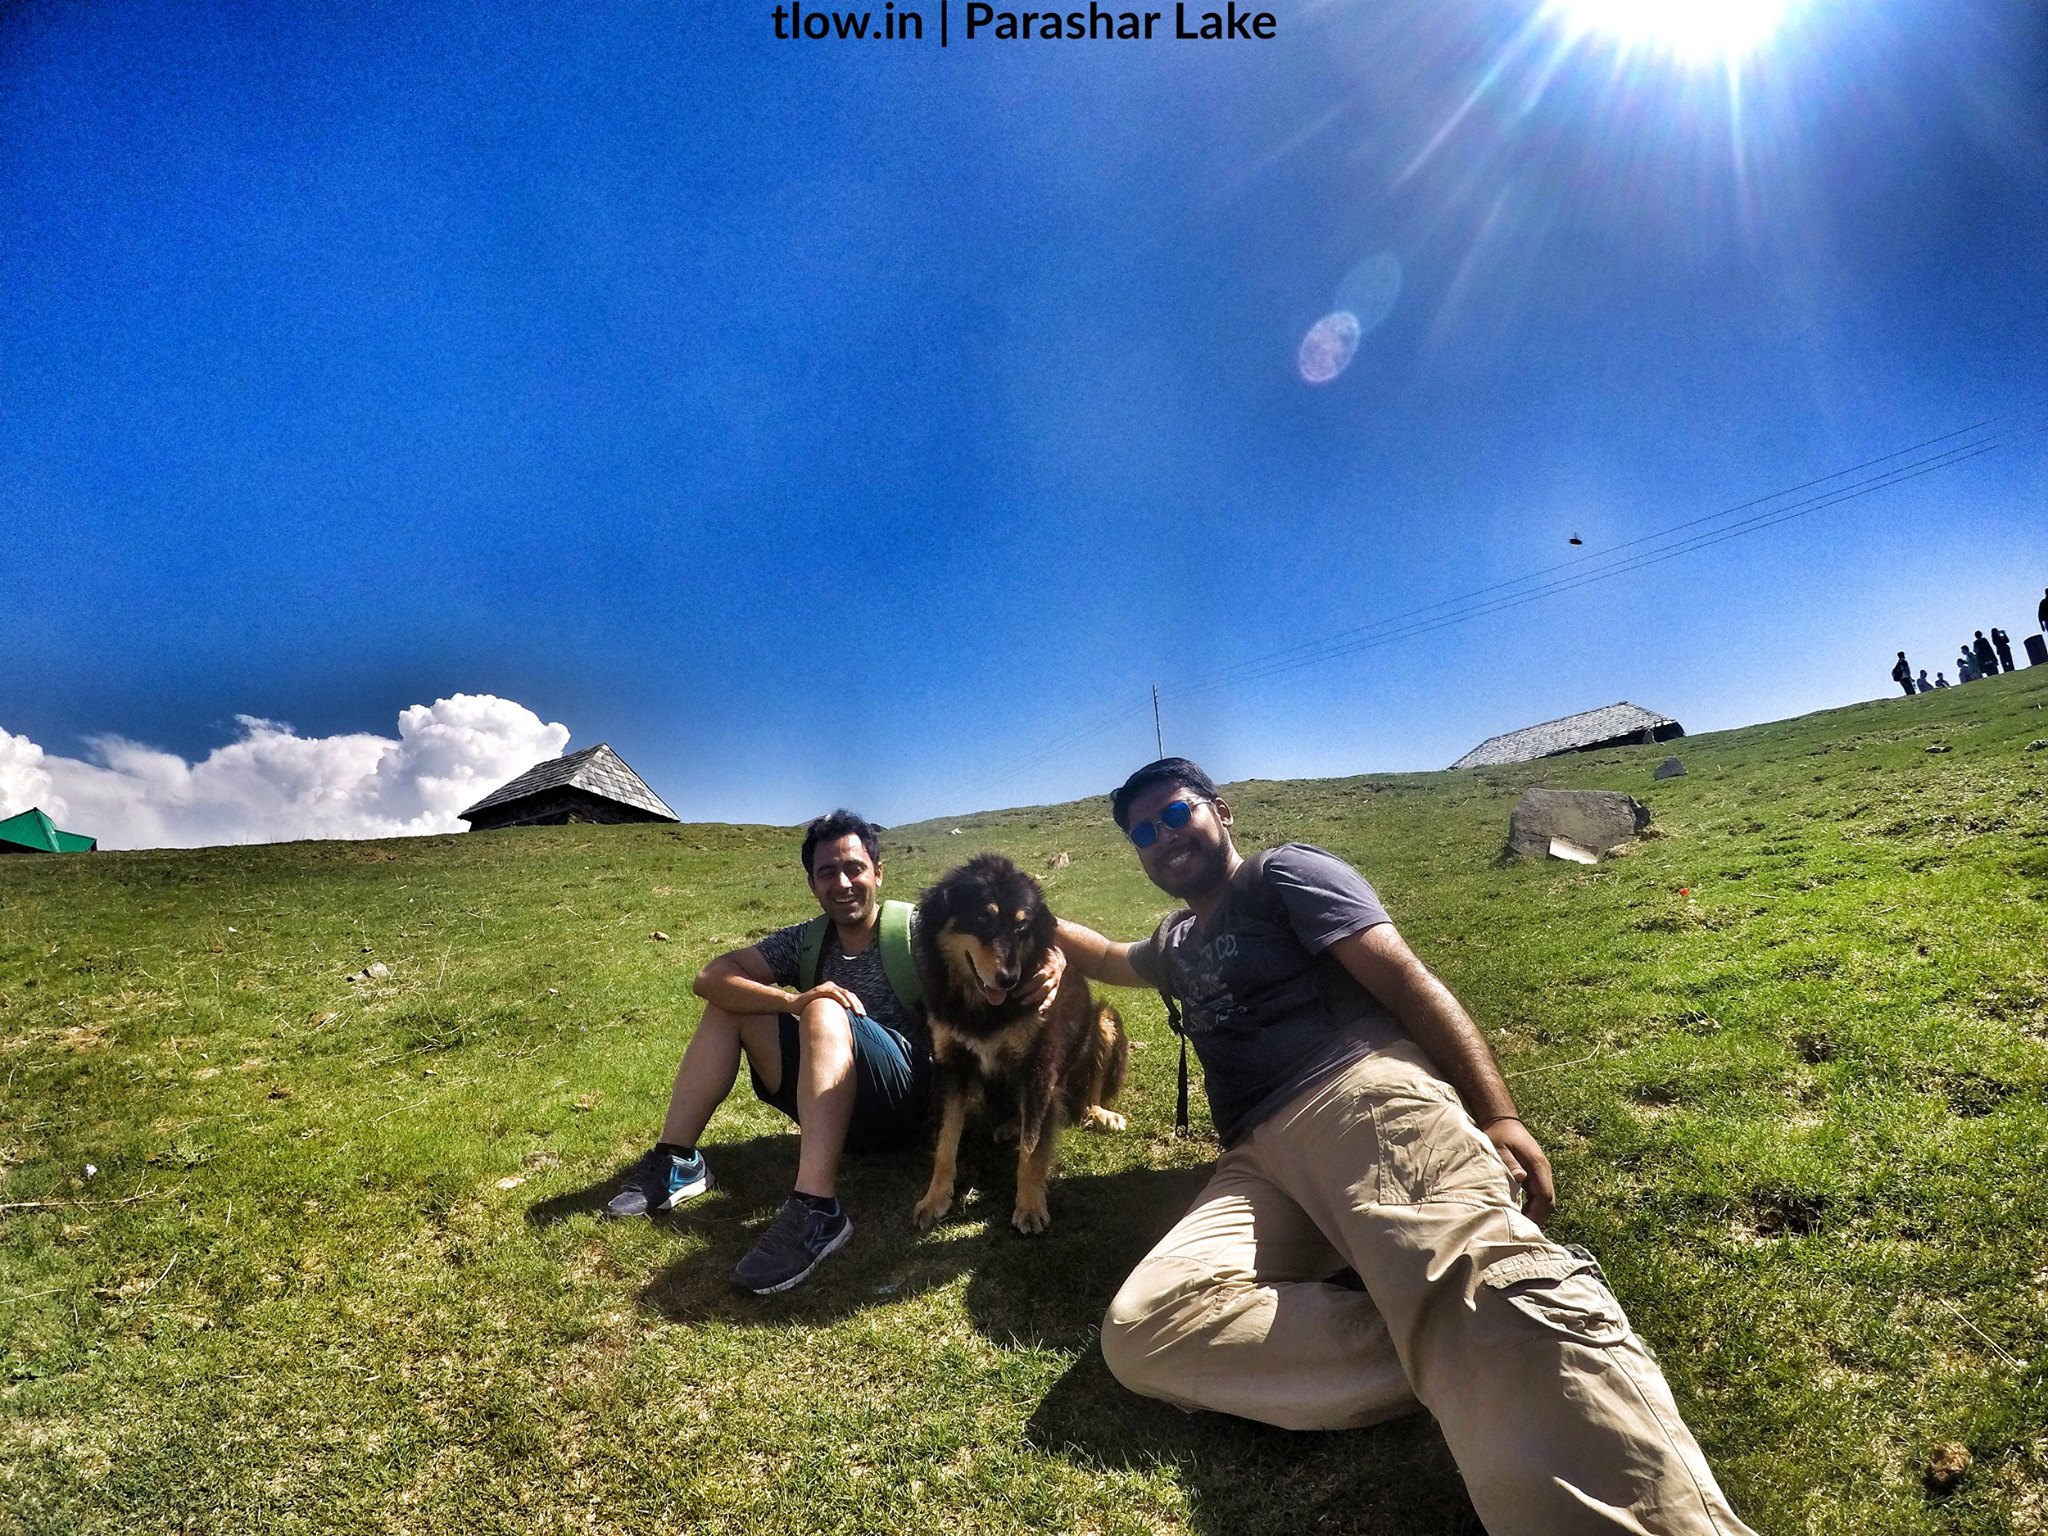 Parashar Lake